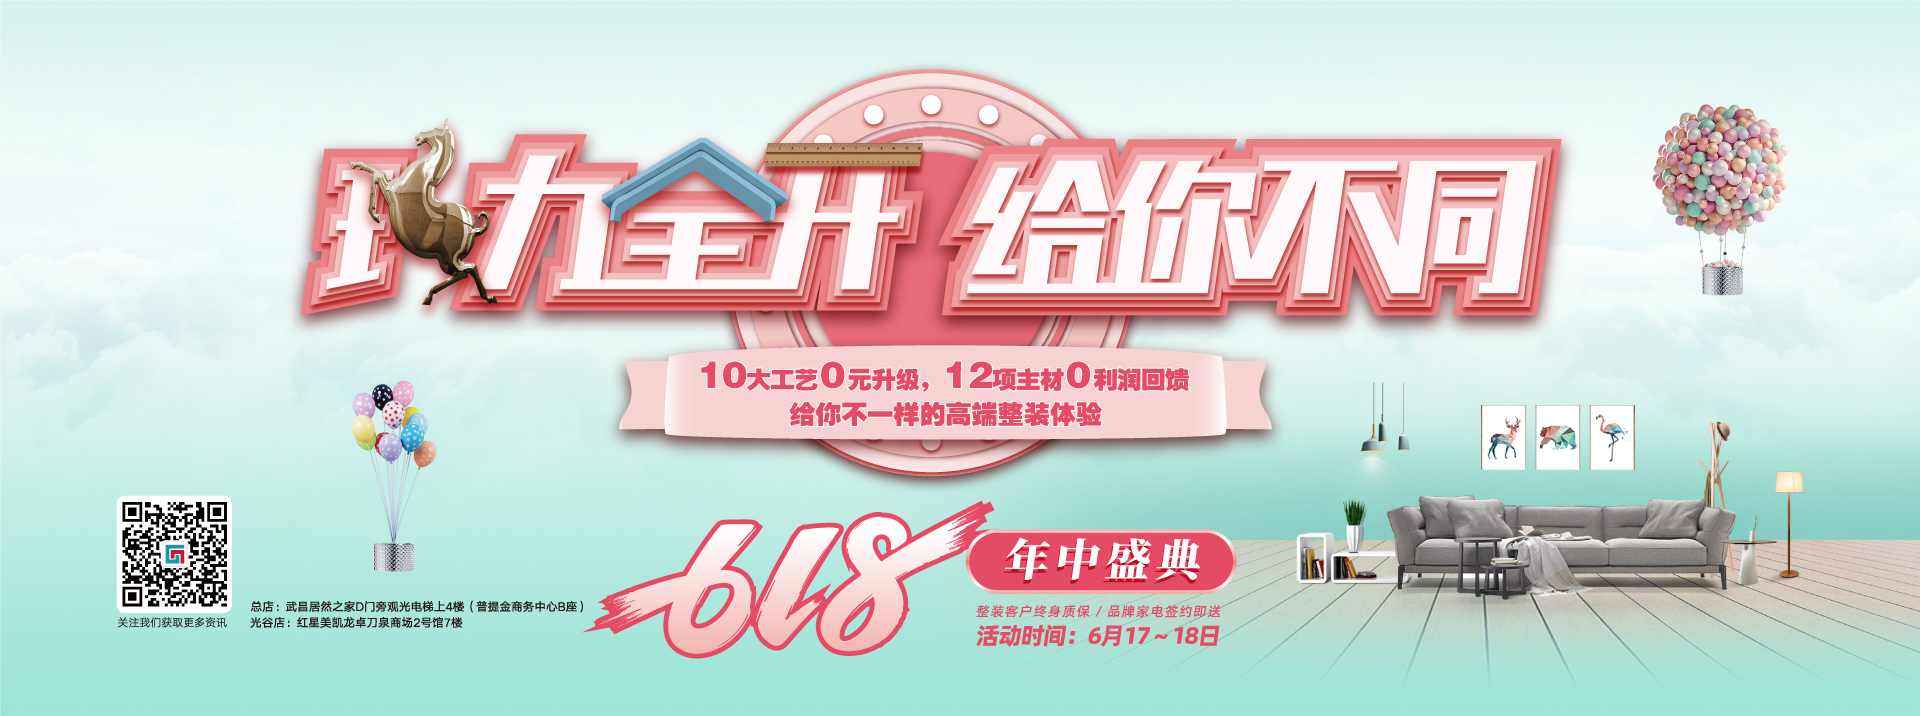 人人操韩国最新三级电影六西格玛装饰活动海报